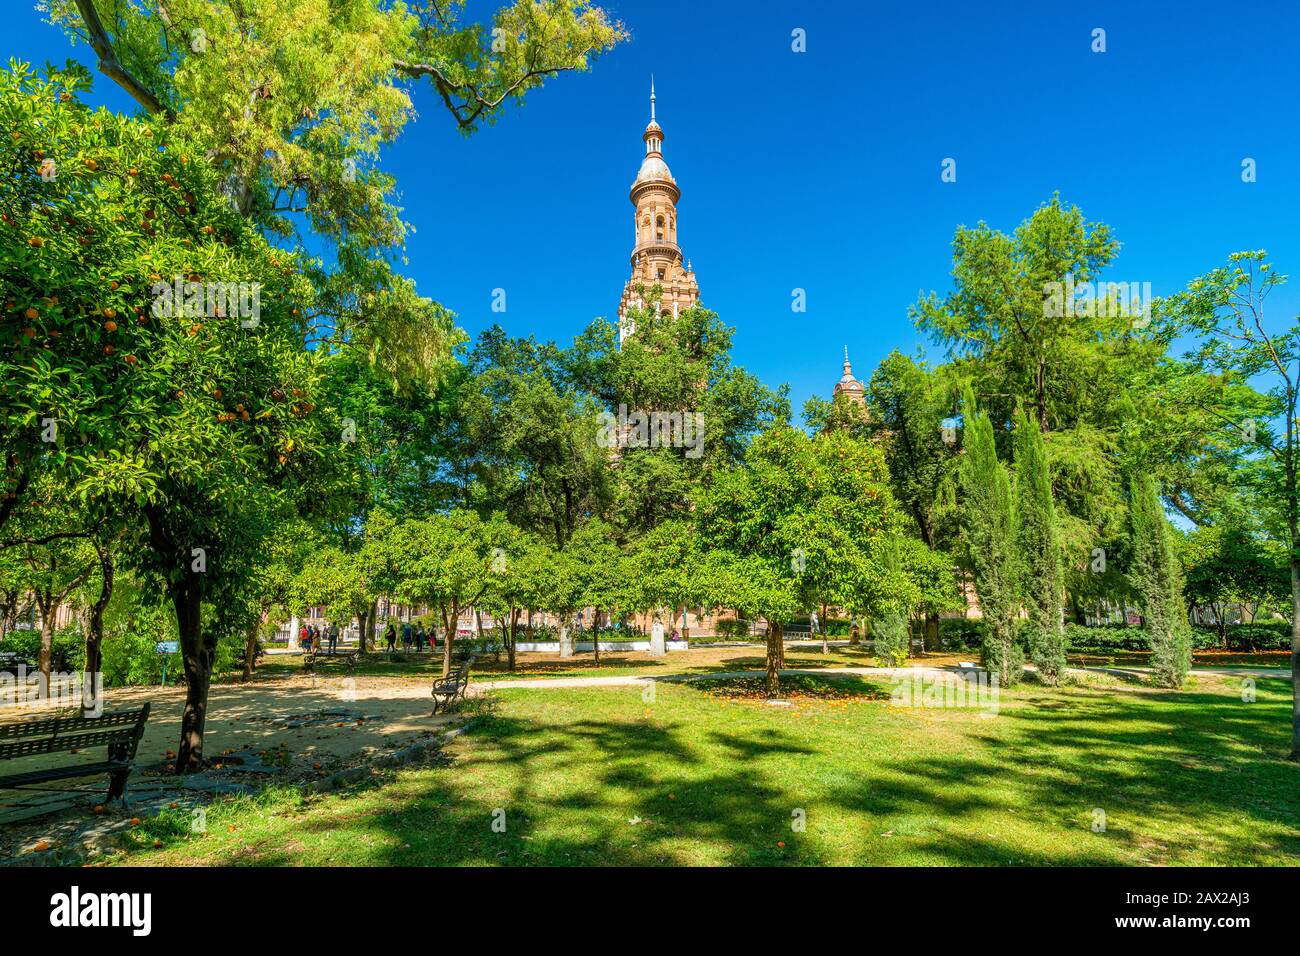 Il Parque de Maria Luisa (Parco Maria Luisa), famoso parco pubblico di Siviglia, con la torre di Plaza de Espana. Andalusia, Spagna. Foto Stock